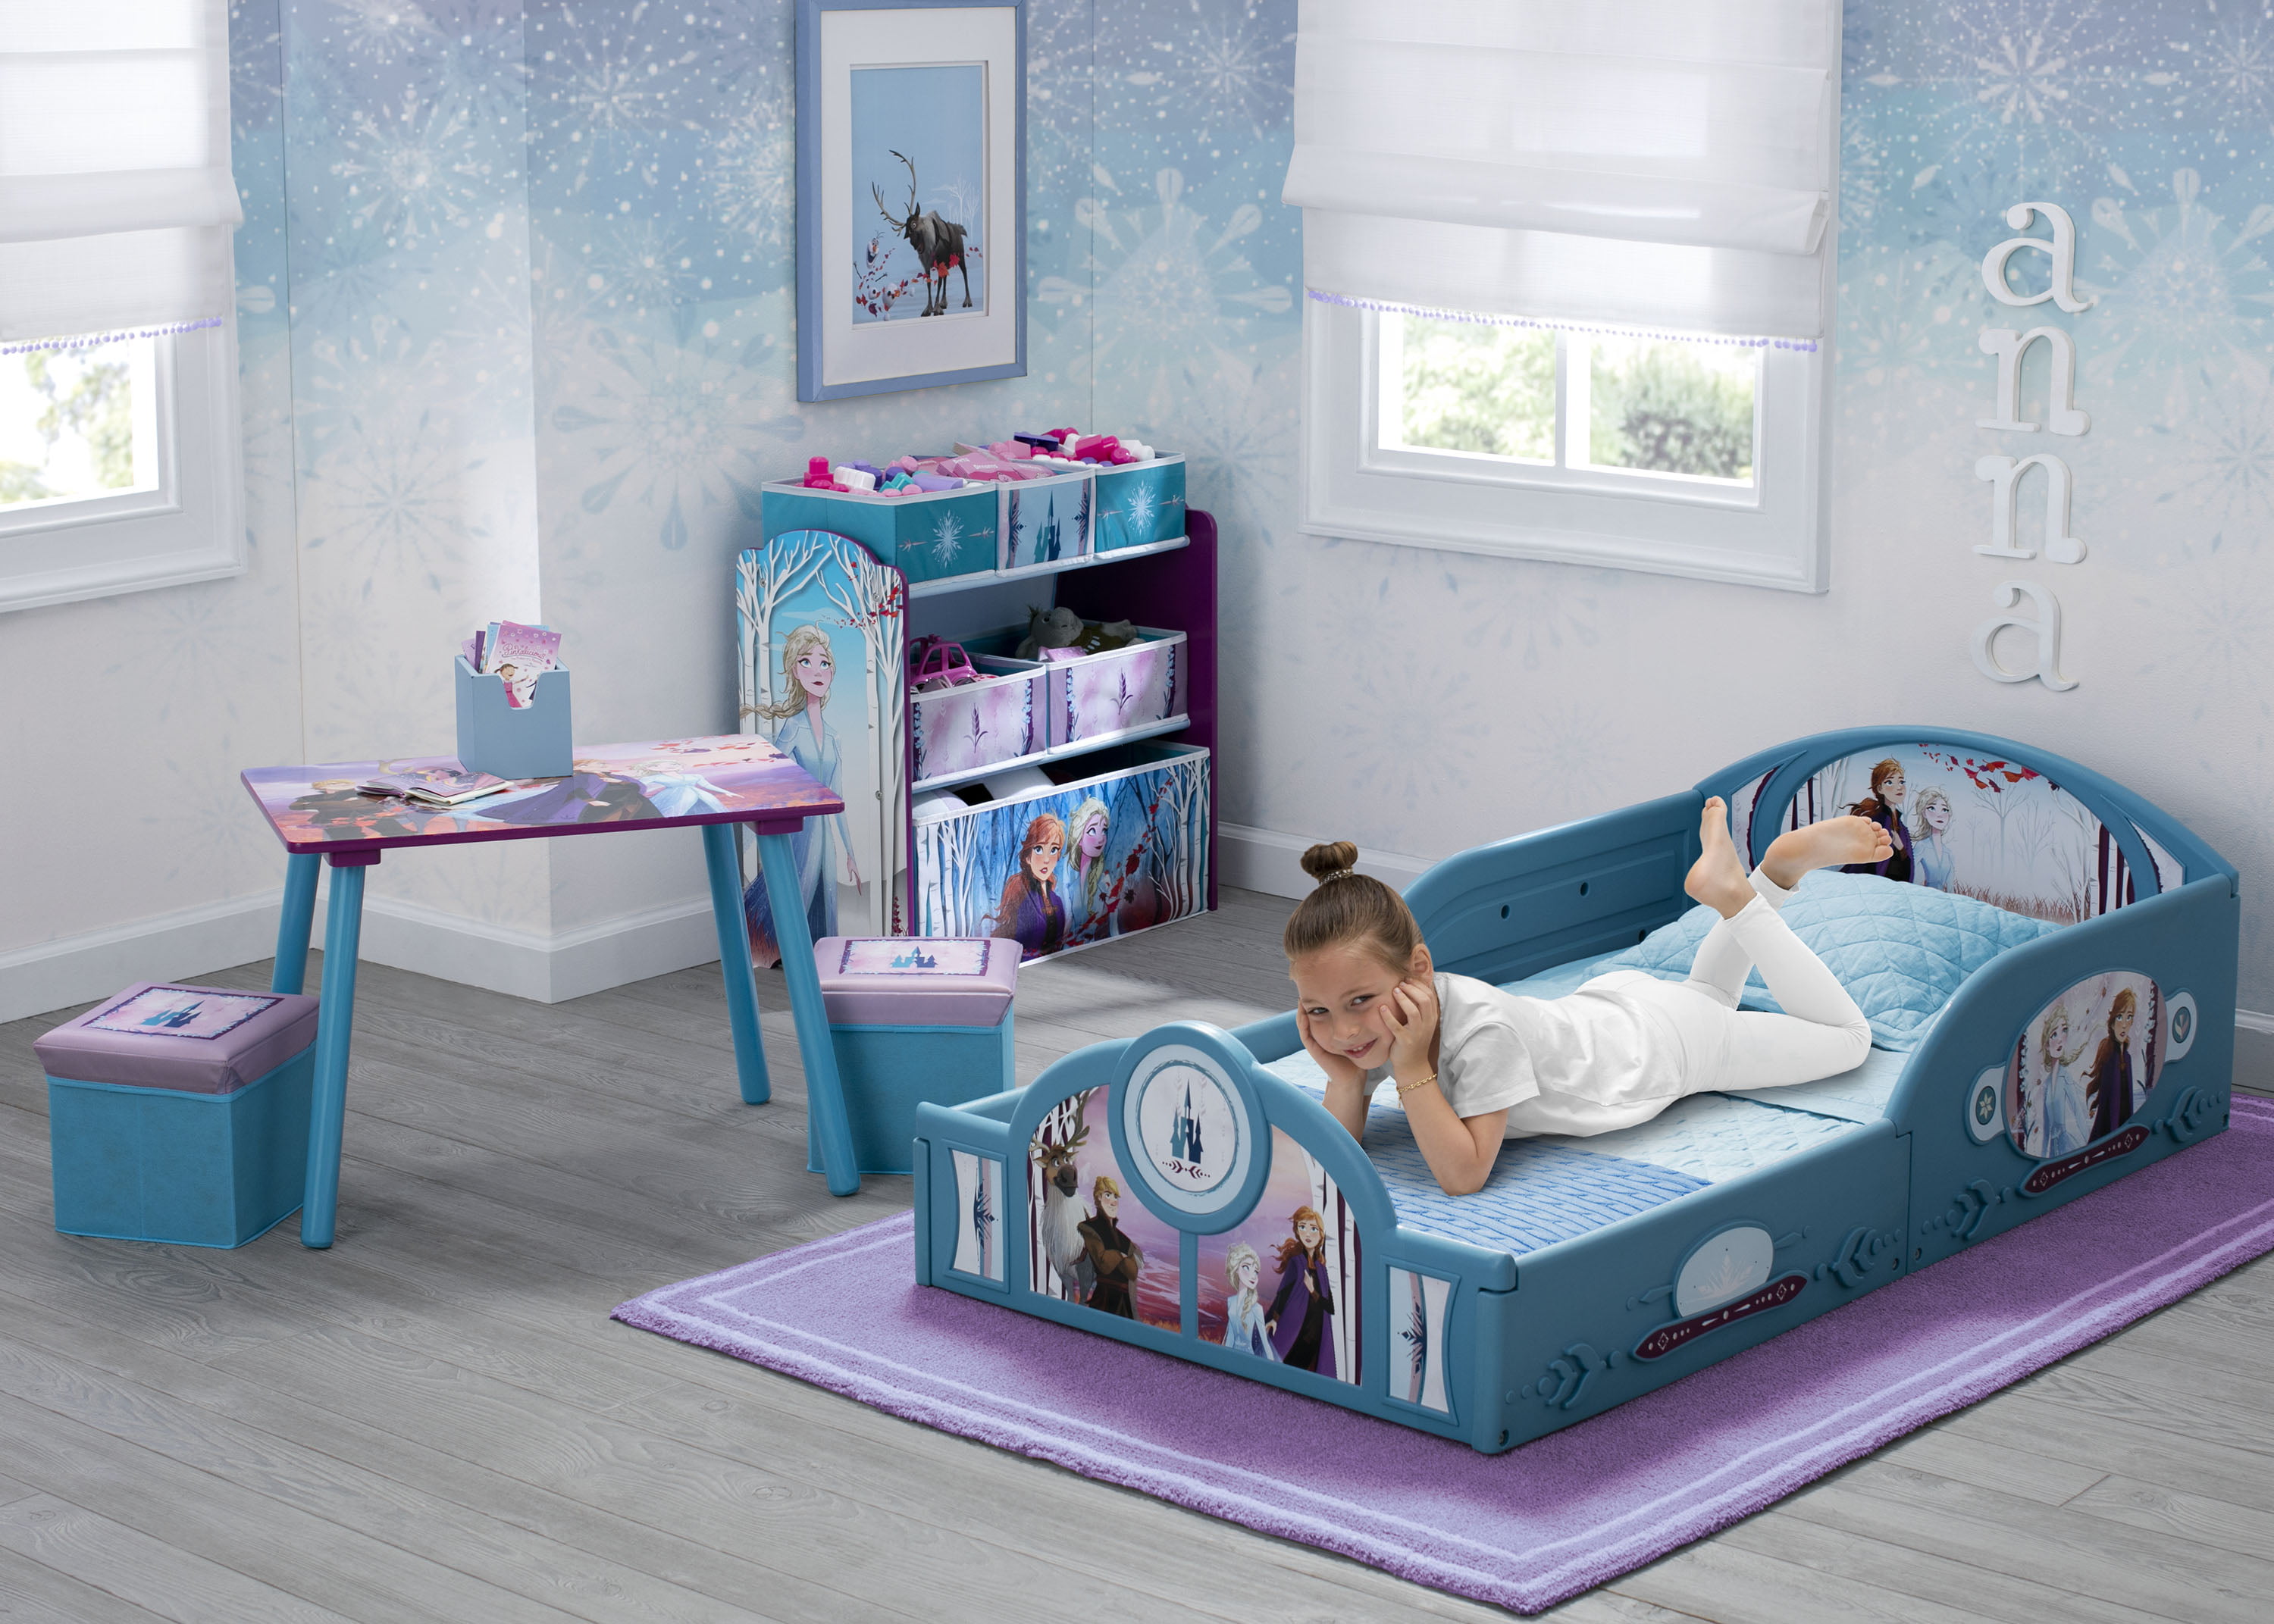 frozen bedroom furniture set